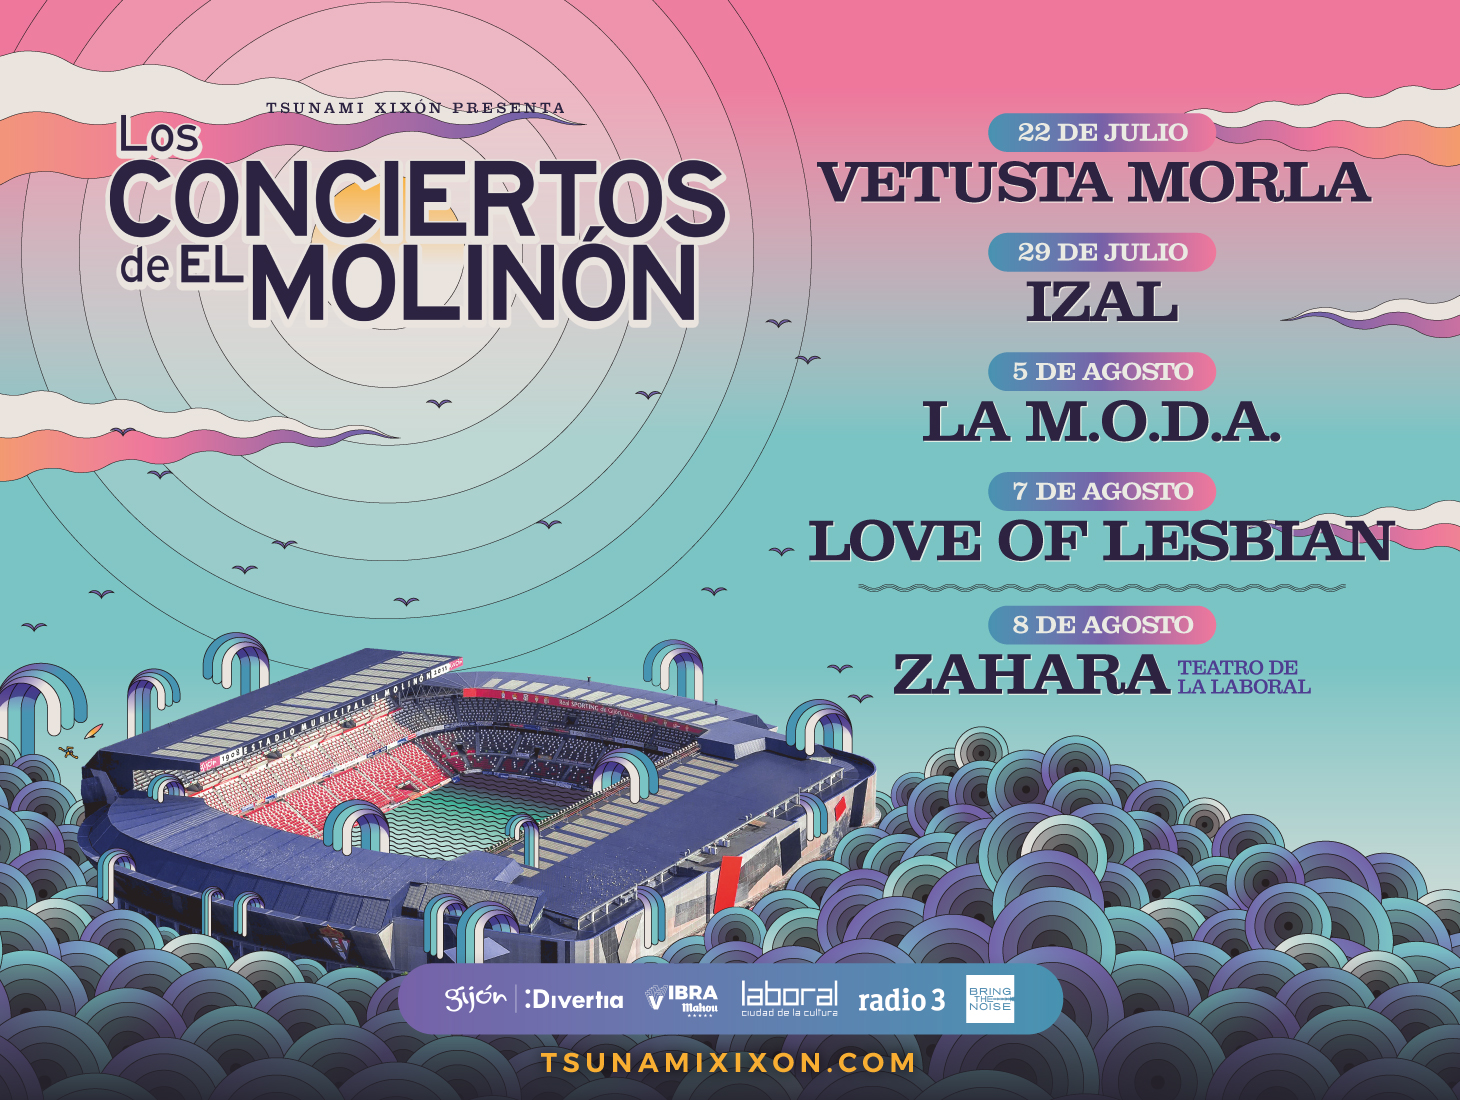 love-of-lesbian-los-conciertos-del-molinon-2021-60d59576a181b.jpeg